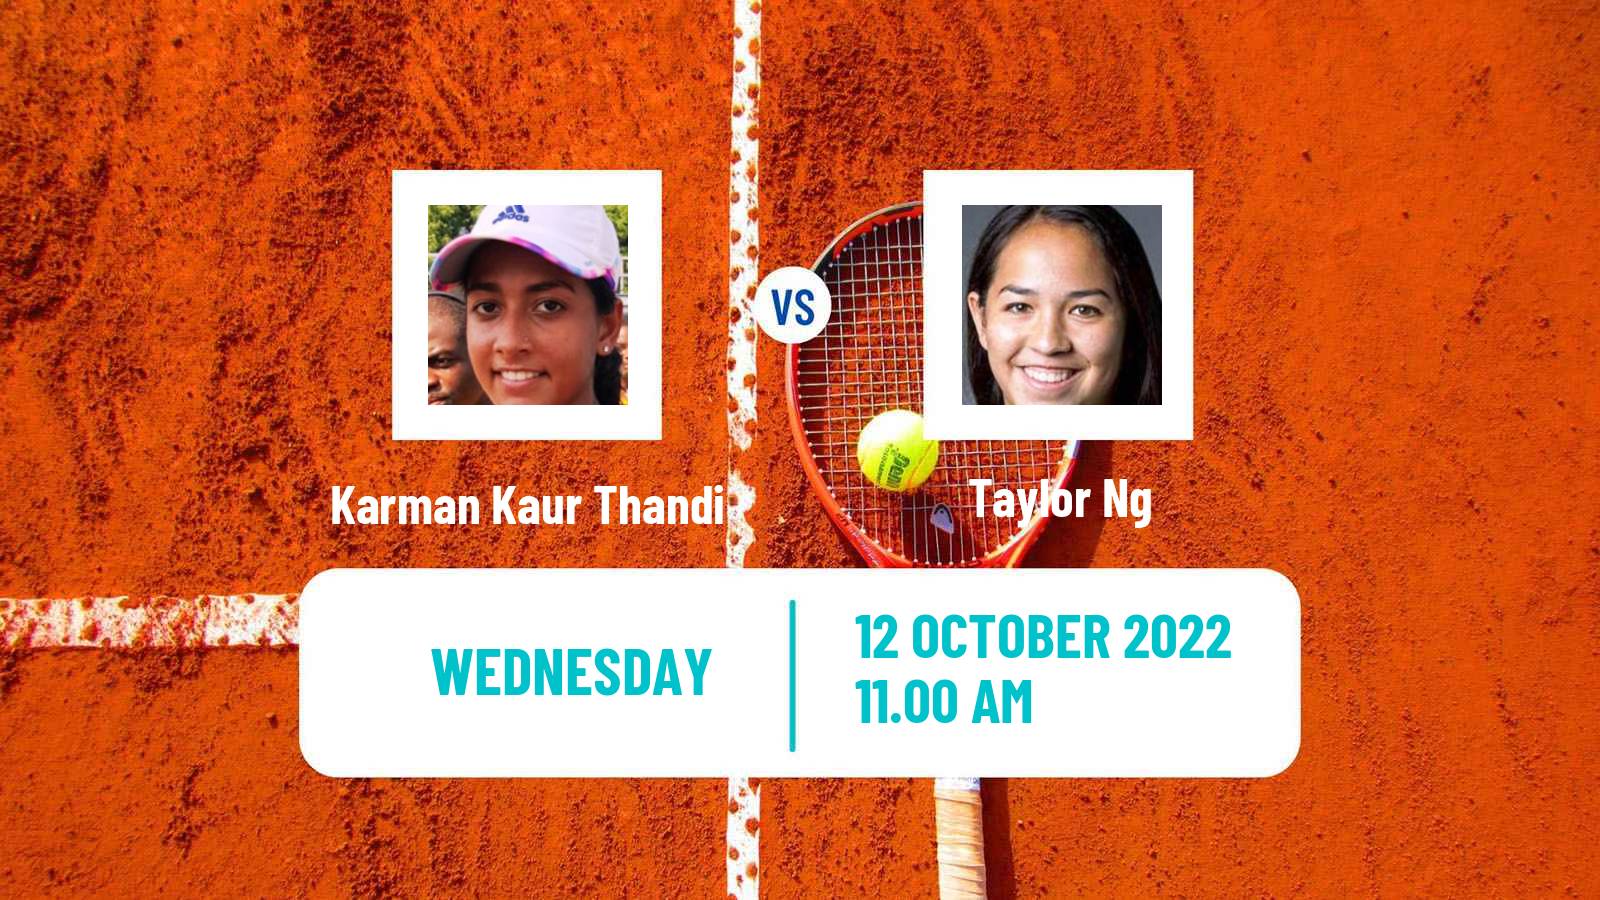 Tennis ITF Tournaments Karman Kaur Thandi - Taylor Ng